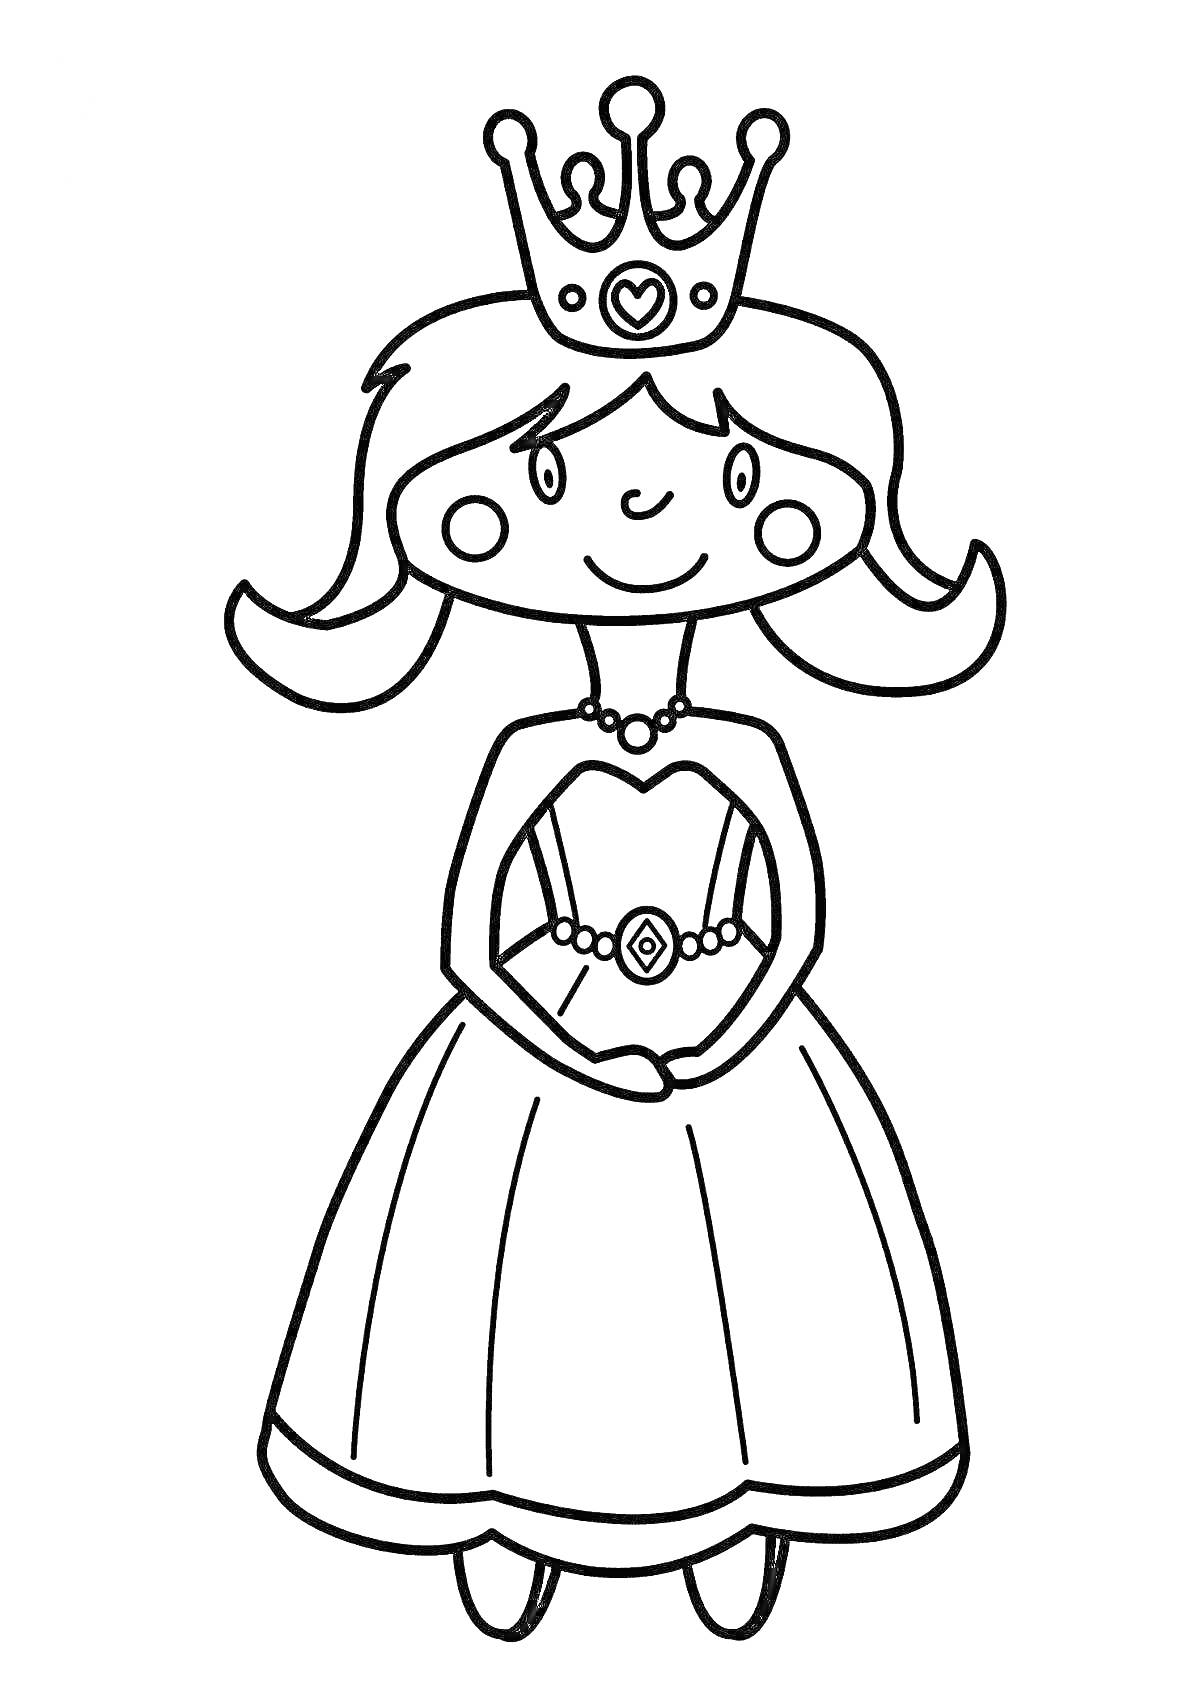 Раскраска Принцесса с короной, в платье с поясом и украшением в форме сердца, с волосами и туфельками